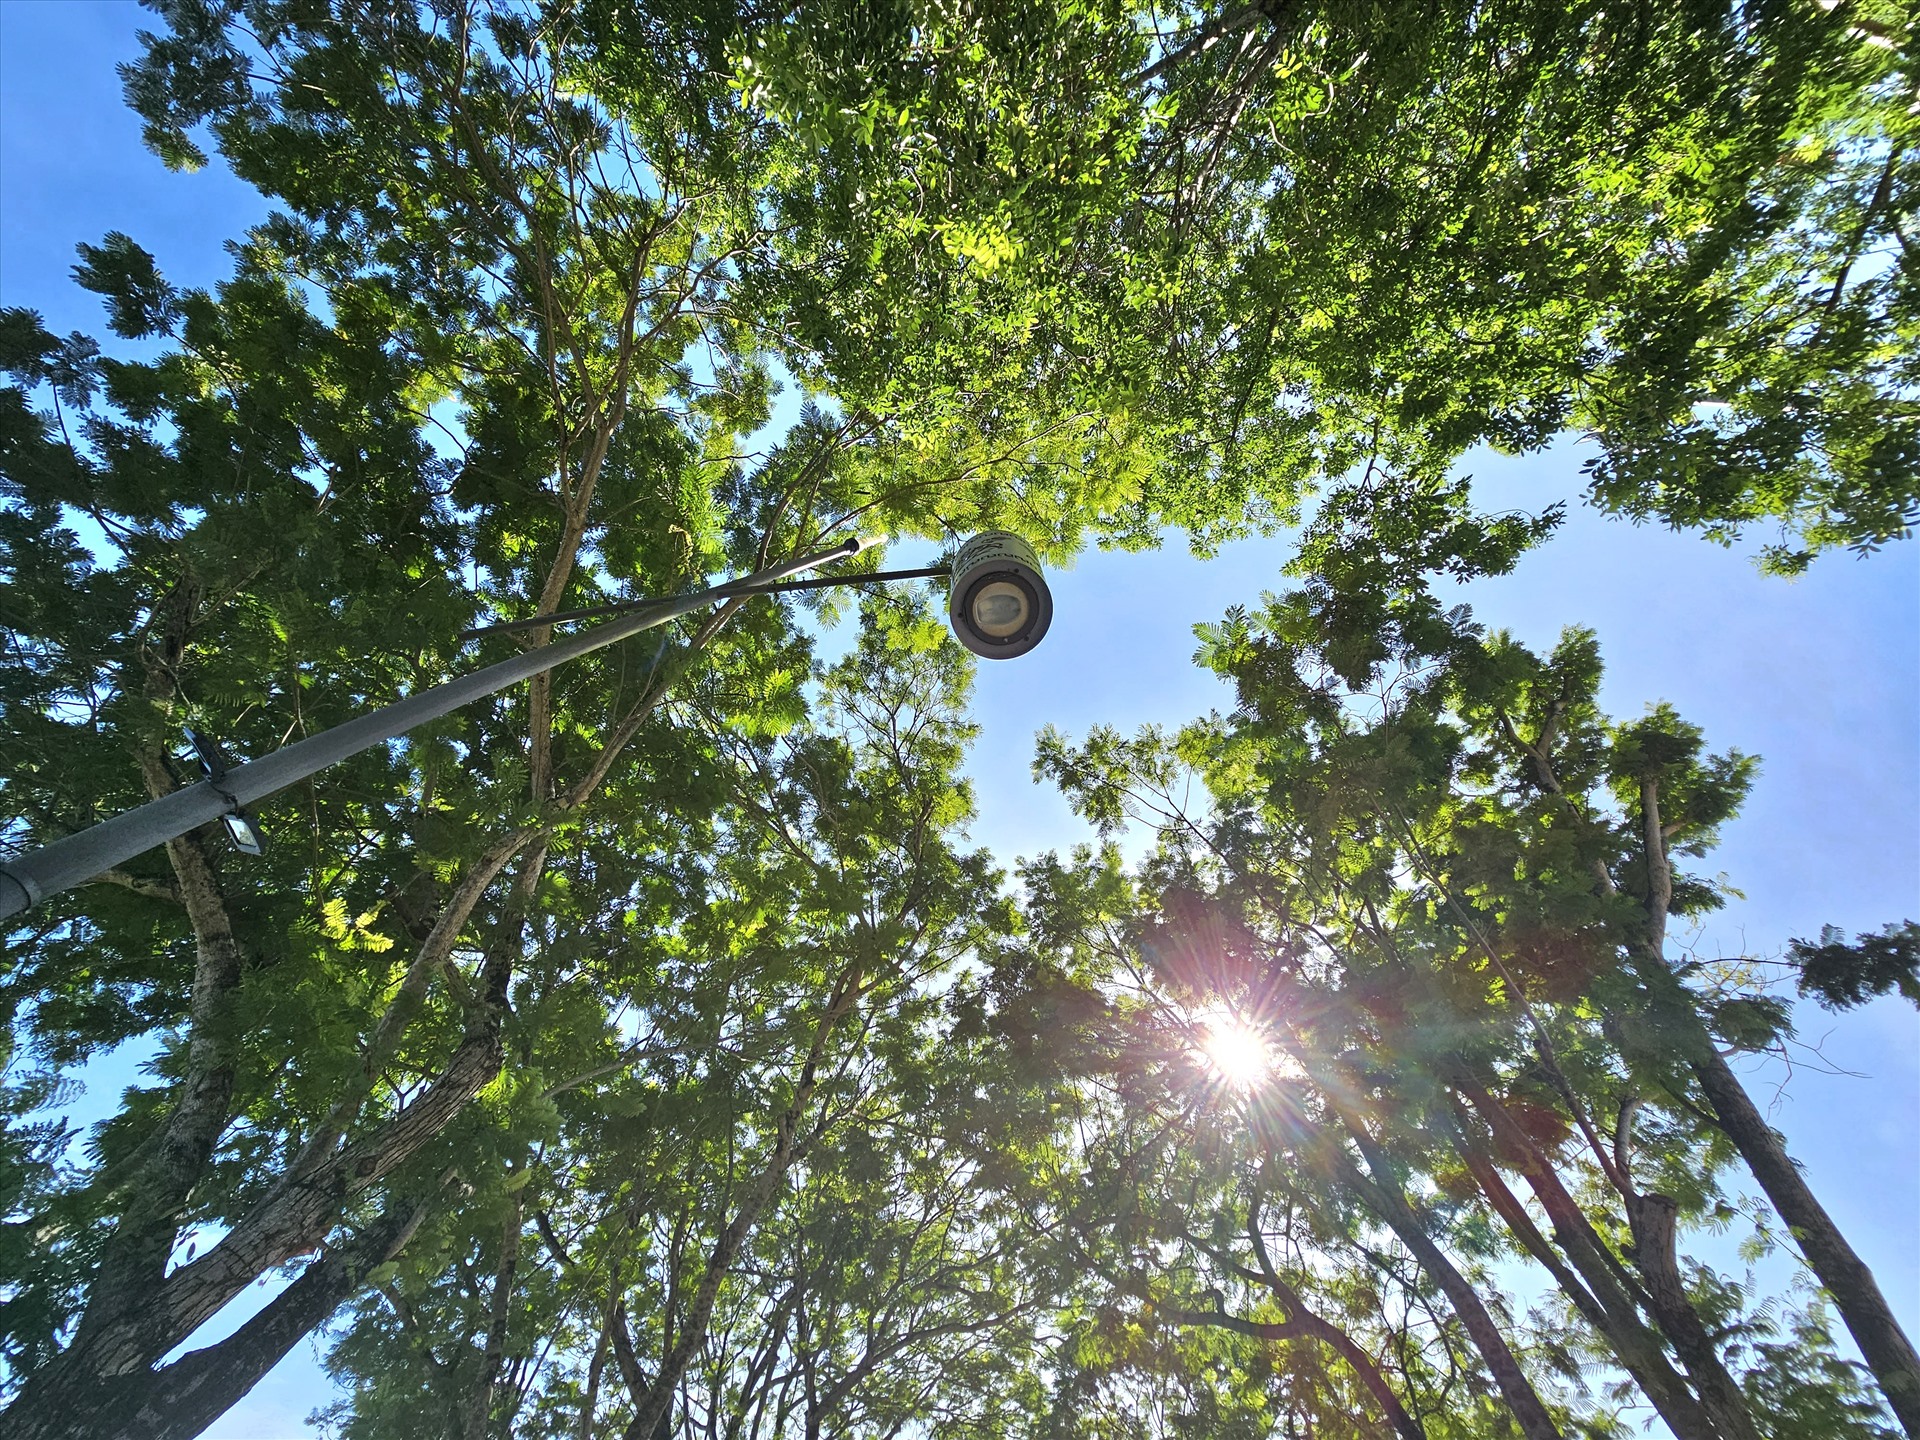 Ánh nắng gắt chiếu qua những khe lá, tạo một không gian xanh đặc trưng của cây lá và một không khí trong lành mặc cho đây là chốn đông người.